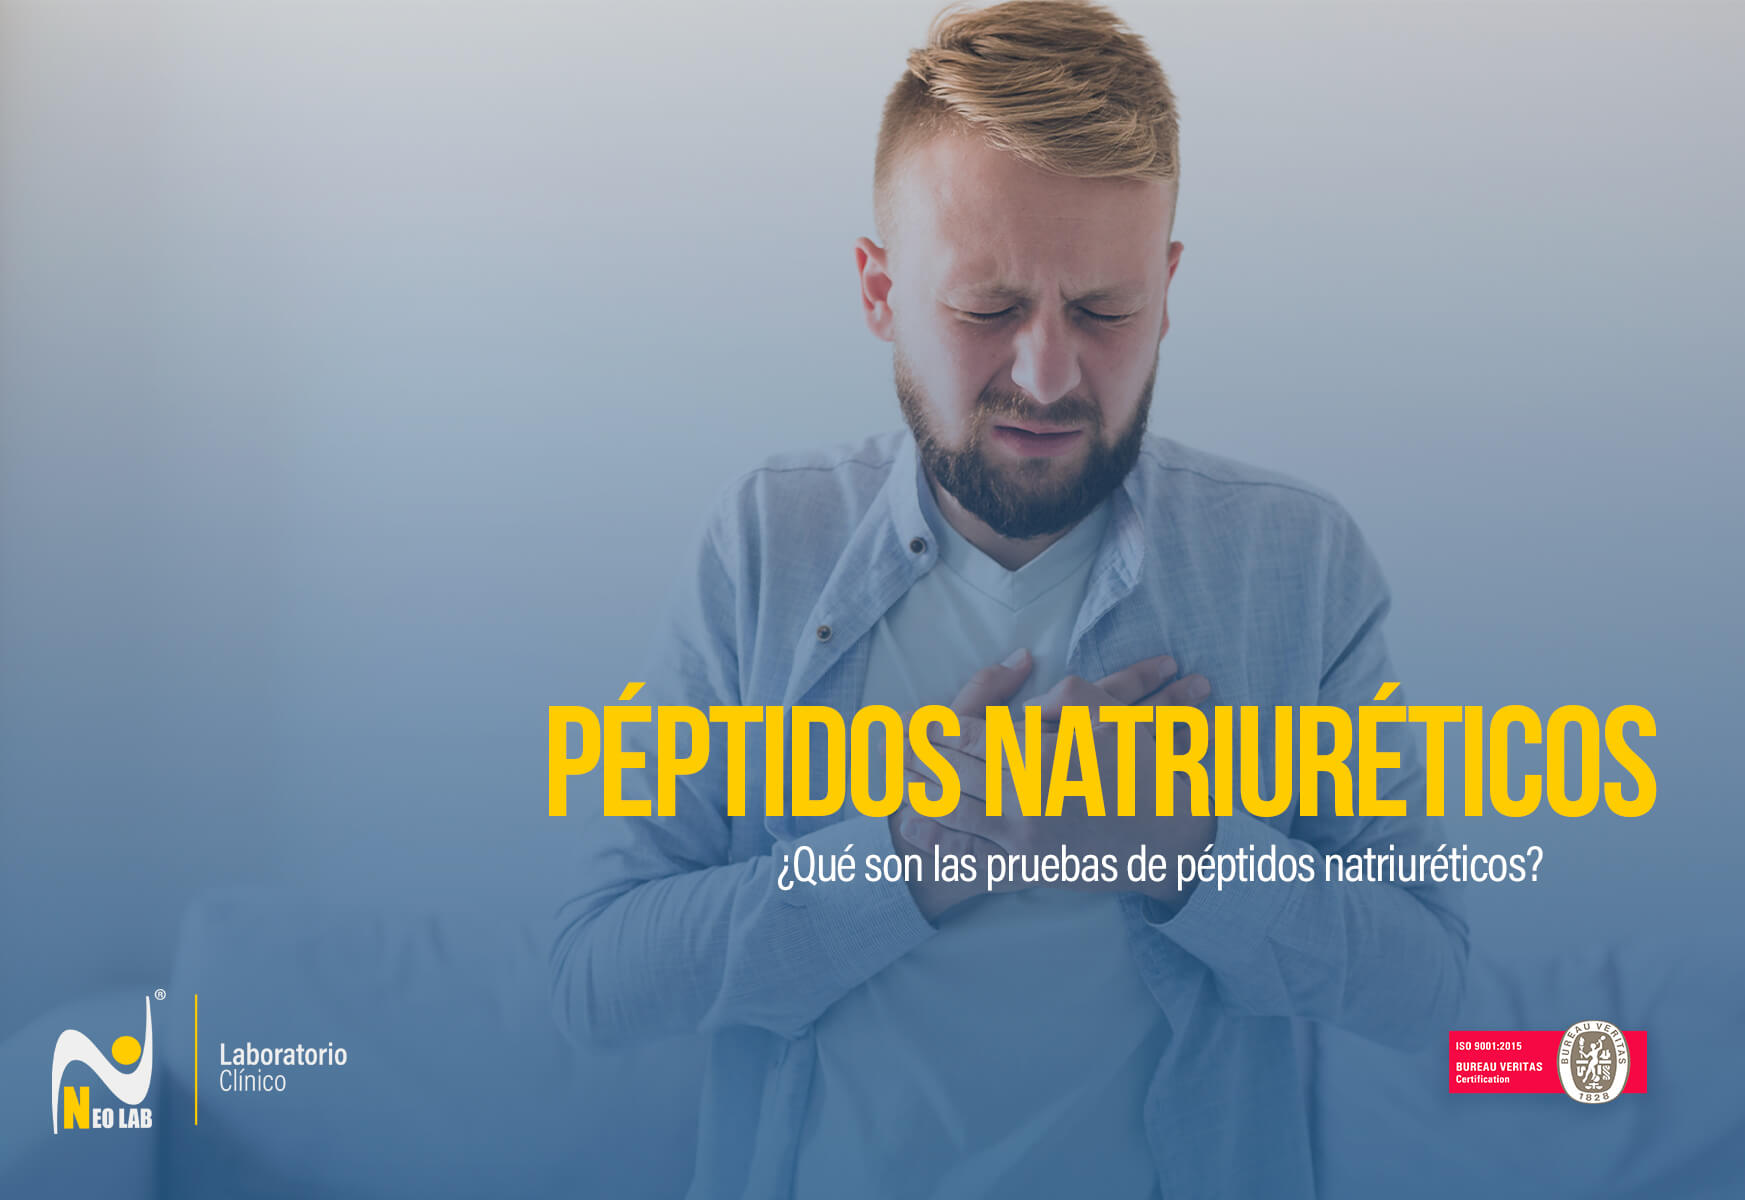 neolab-laboratorioclinico-peptidos-pruebas